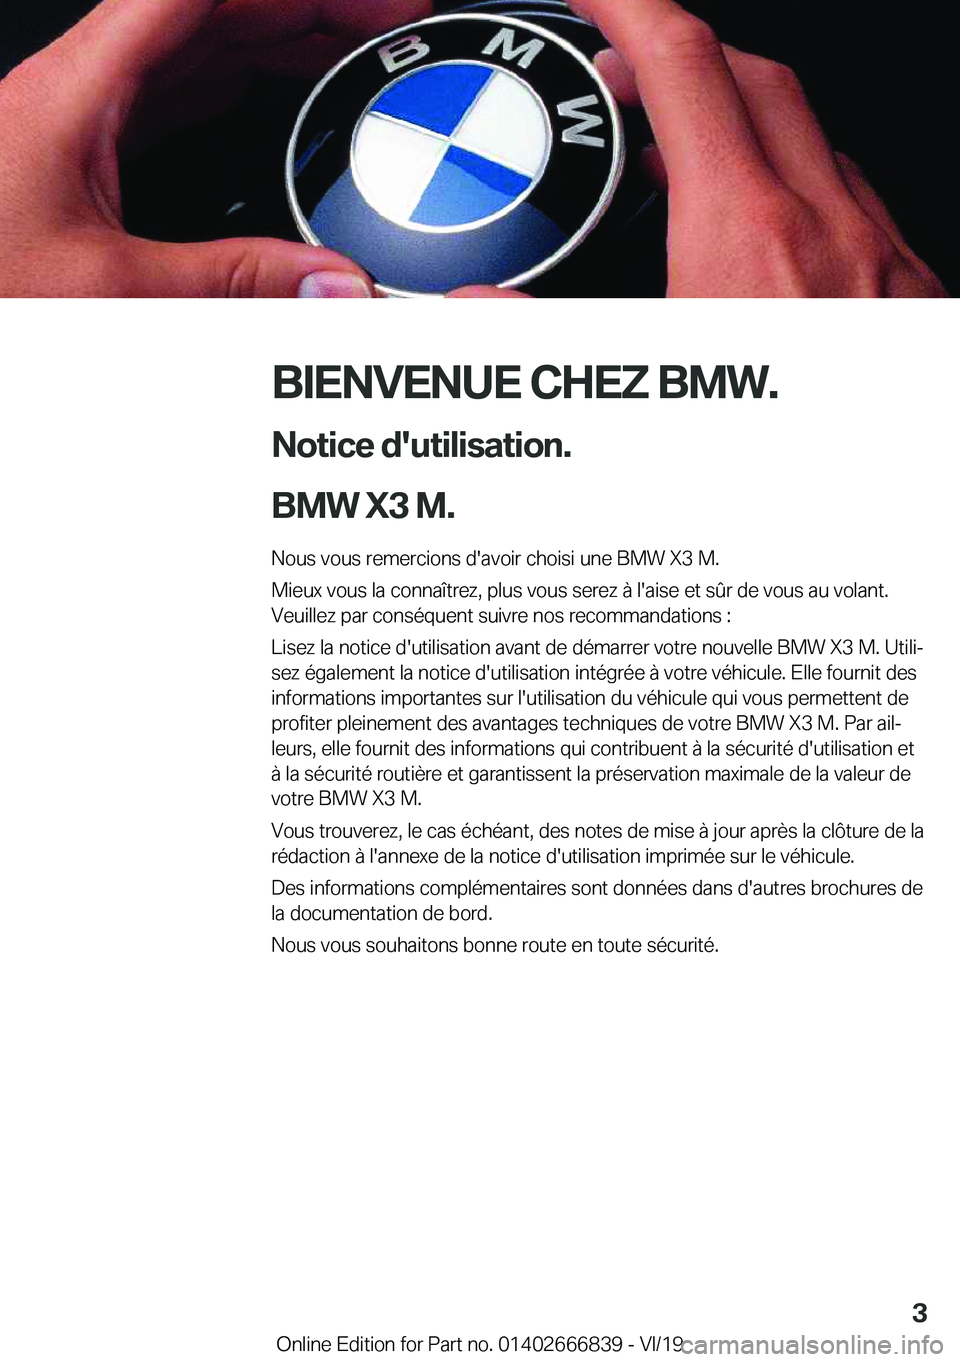 BMW X3 M 2020  Notices Demploi (in French) �B�I�E�N�V�E�N�U�E��C�H�E�Z��B�M�W�.�N�o�t�i�c�e��d�'�u�t�i�l�i�s�a�t�i�o�n�.
�B�M�W��X�3��M�. �N�o�u�s��v�o�u�s��r�e�m�e�r�c�i�o�n�s��d�'�a�v�o�i�r��c�h�o�i�s�i��u�n�e��B�M�W��X�3